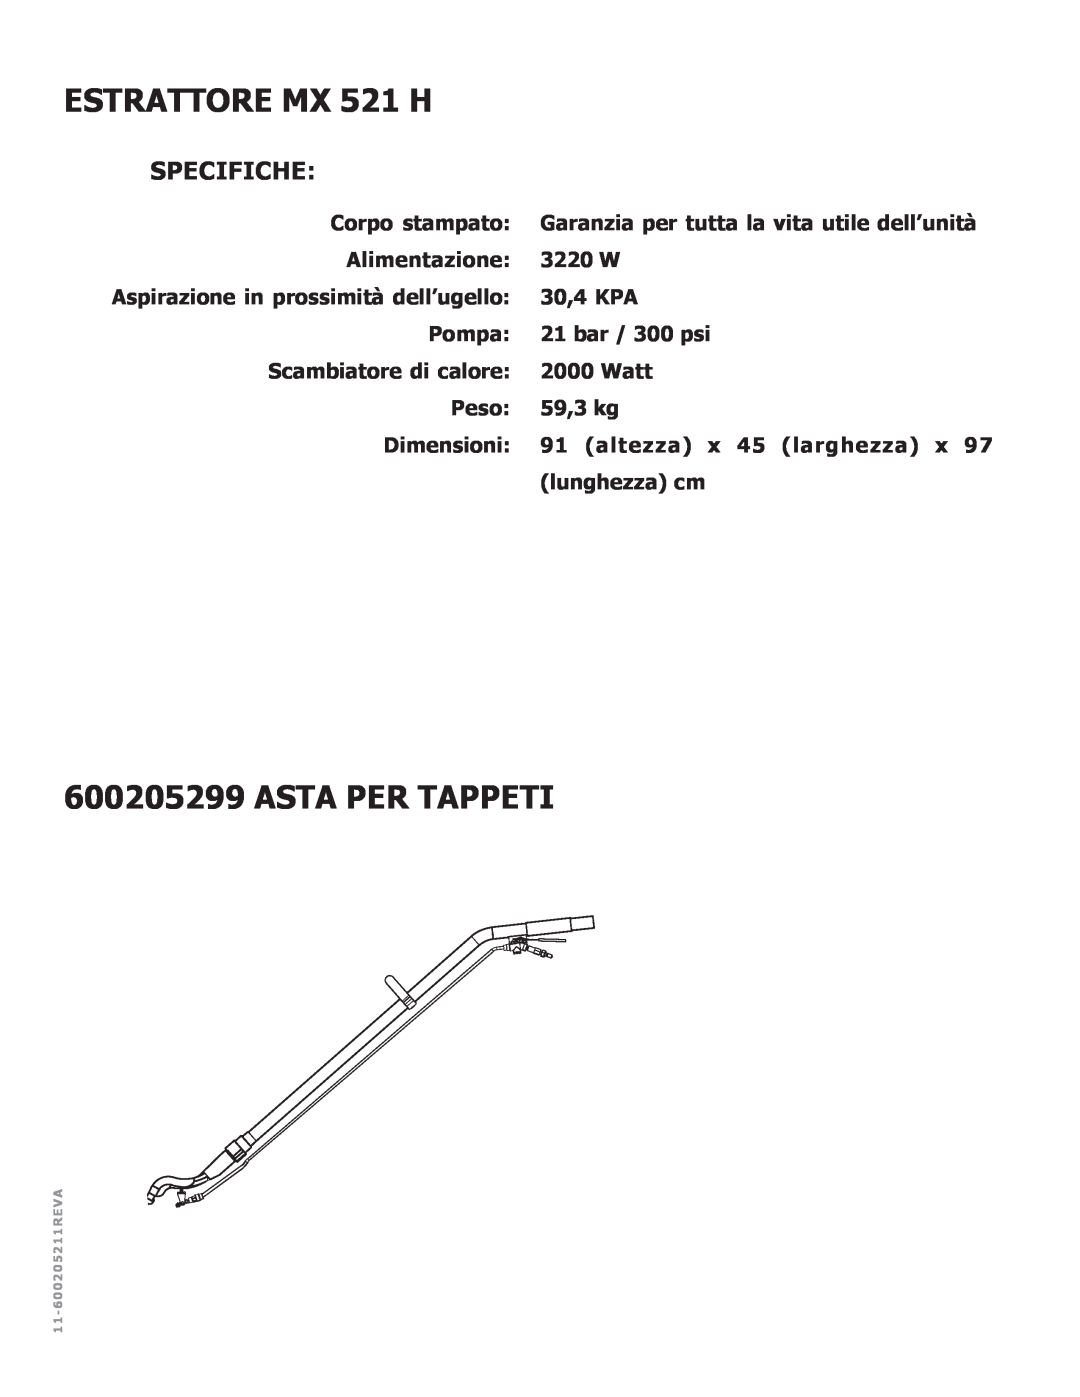 Nilfisk-ALTO manual ESTRATTORE MX 521 H, Asta Per Tappeti, Specifiche 